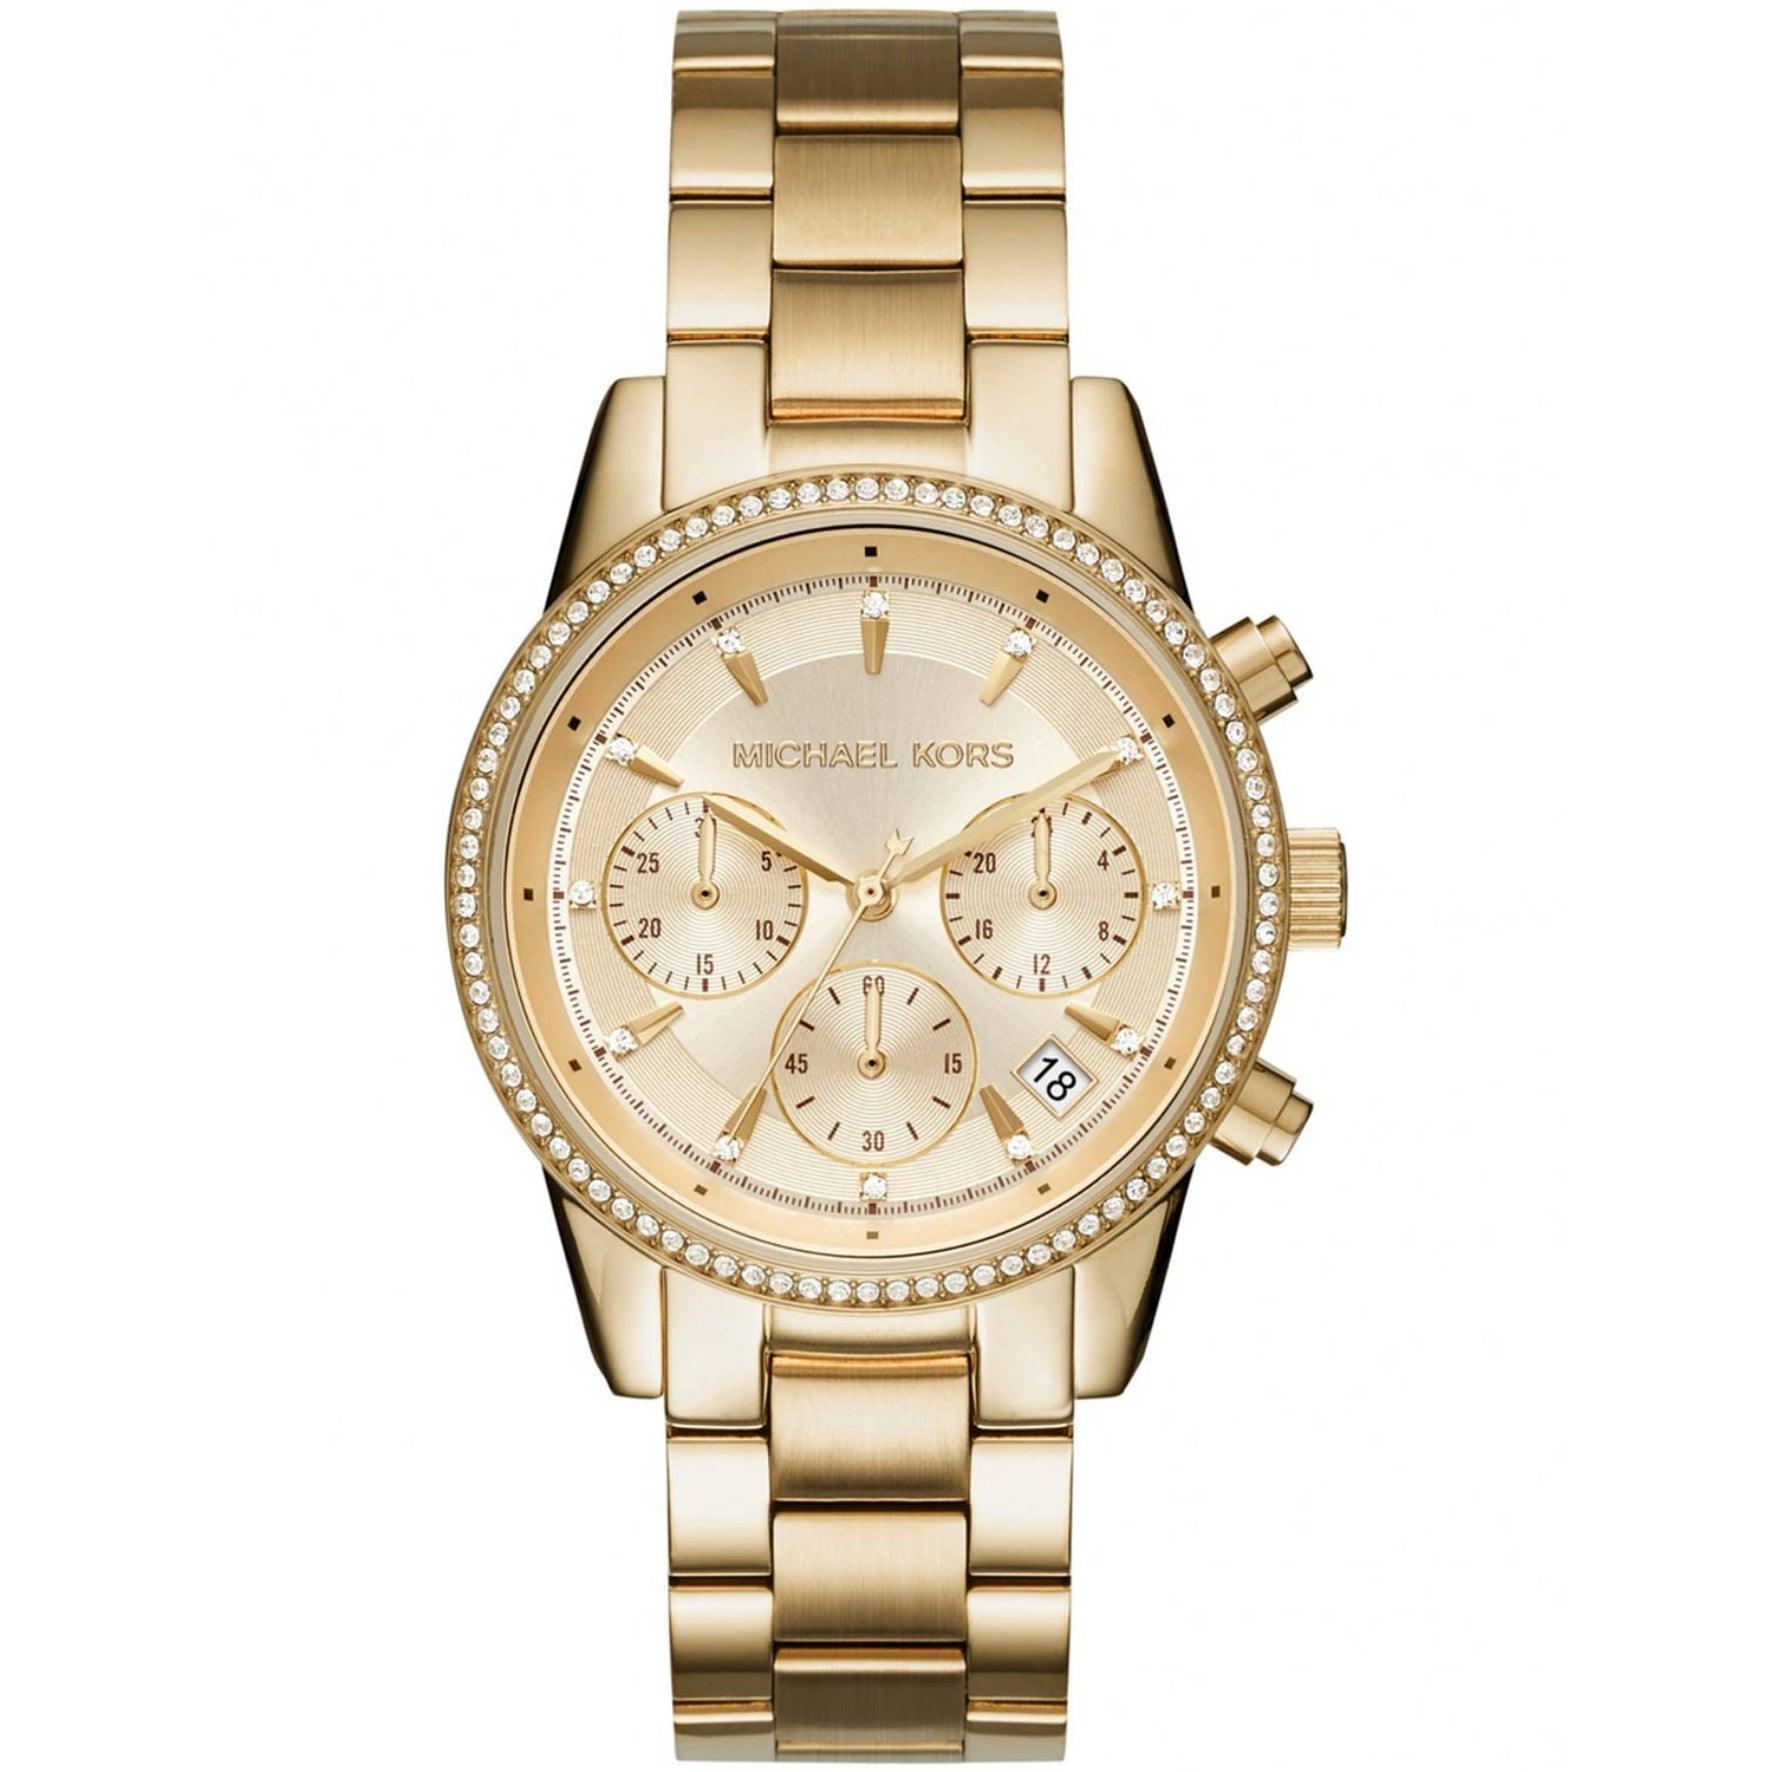 Γυναικείο ρολόι Michael Kors Ritz MK6356 με χρονογράφο, χρυσό μπρασελέ από ανοξείδωτο ατσάλι και κάσα σε στρογγυλό σχήμα διακοσμημένη με ζιργκόν.